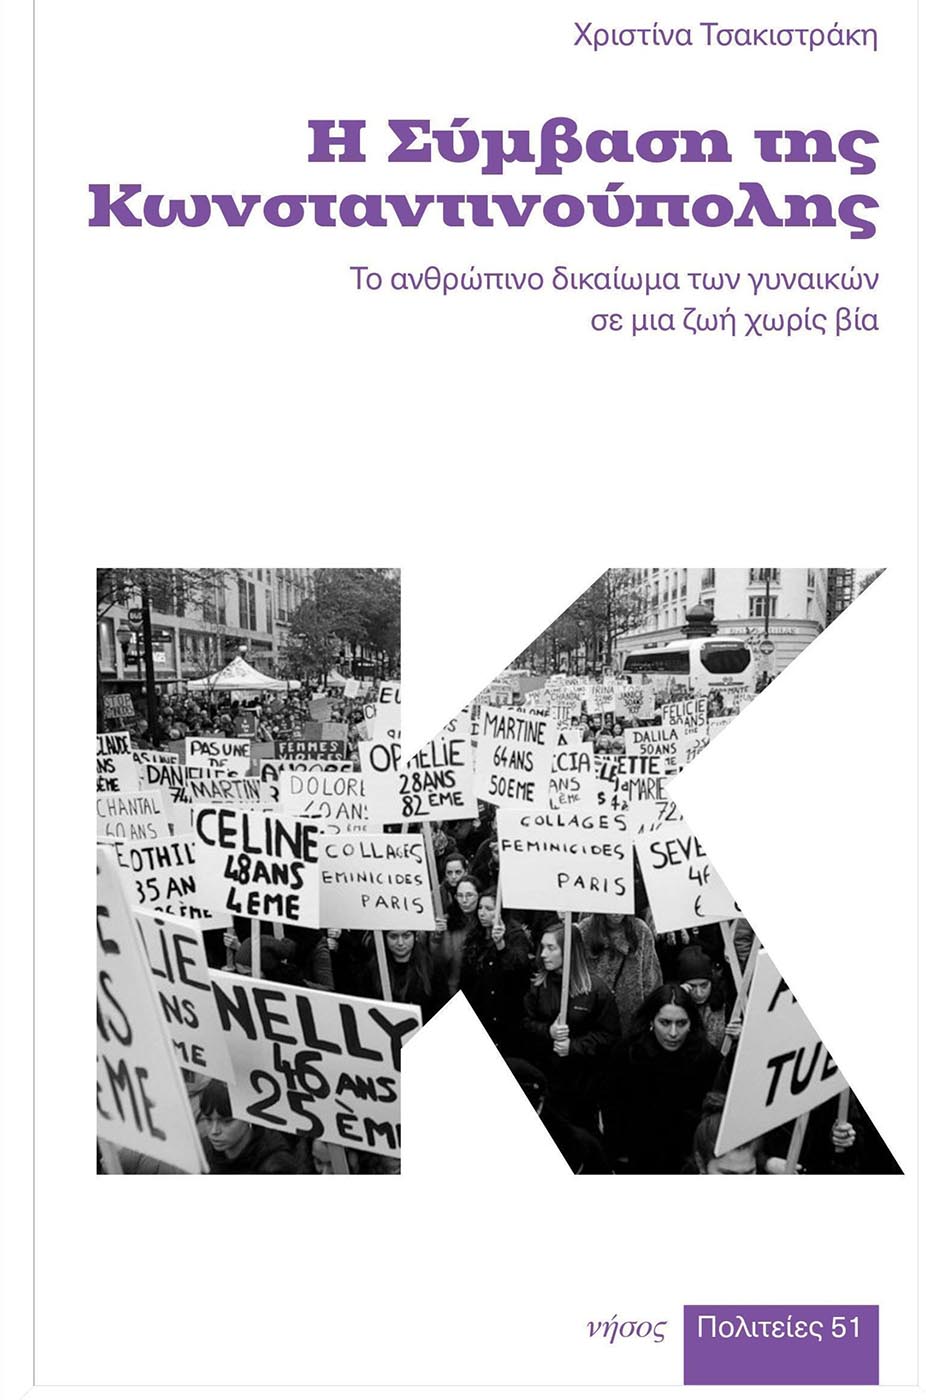 Χριστίνα Τσακιστράκη  Η Σύμβαση της Κωνσταντινούπολης Το ανθρώπινο δικαίωμα των γυναικών σε μια ζωή χωρίς βία